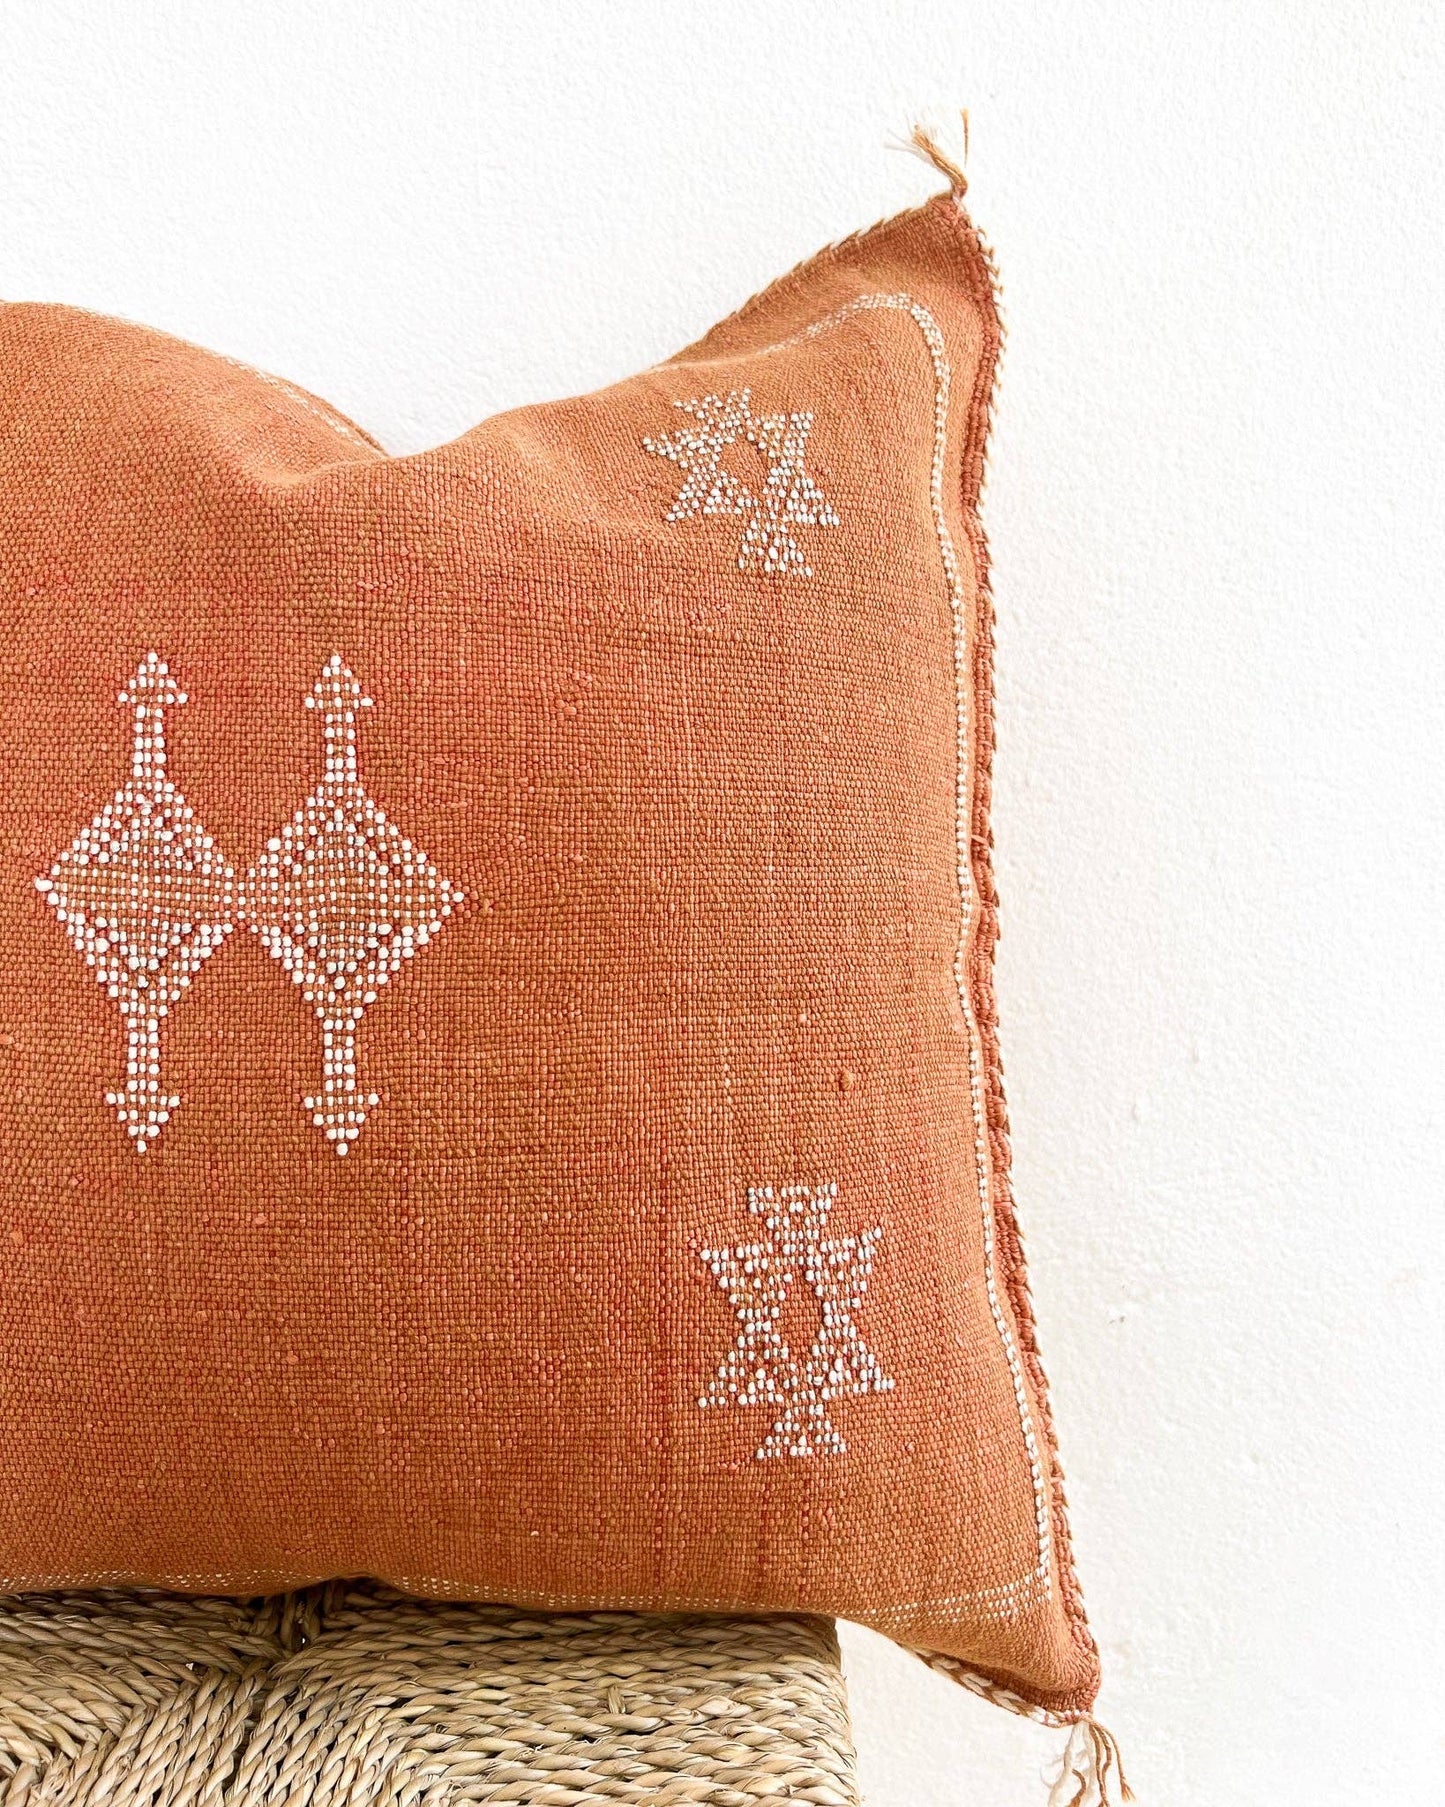 Moroccan Cactus Pillow Cover